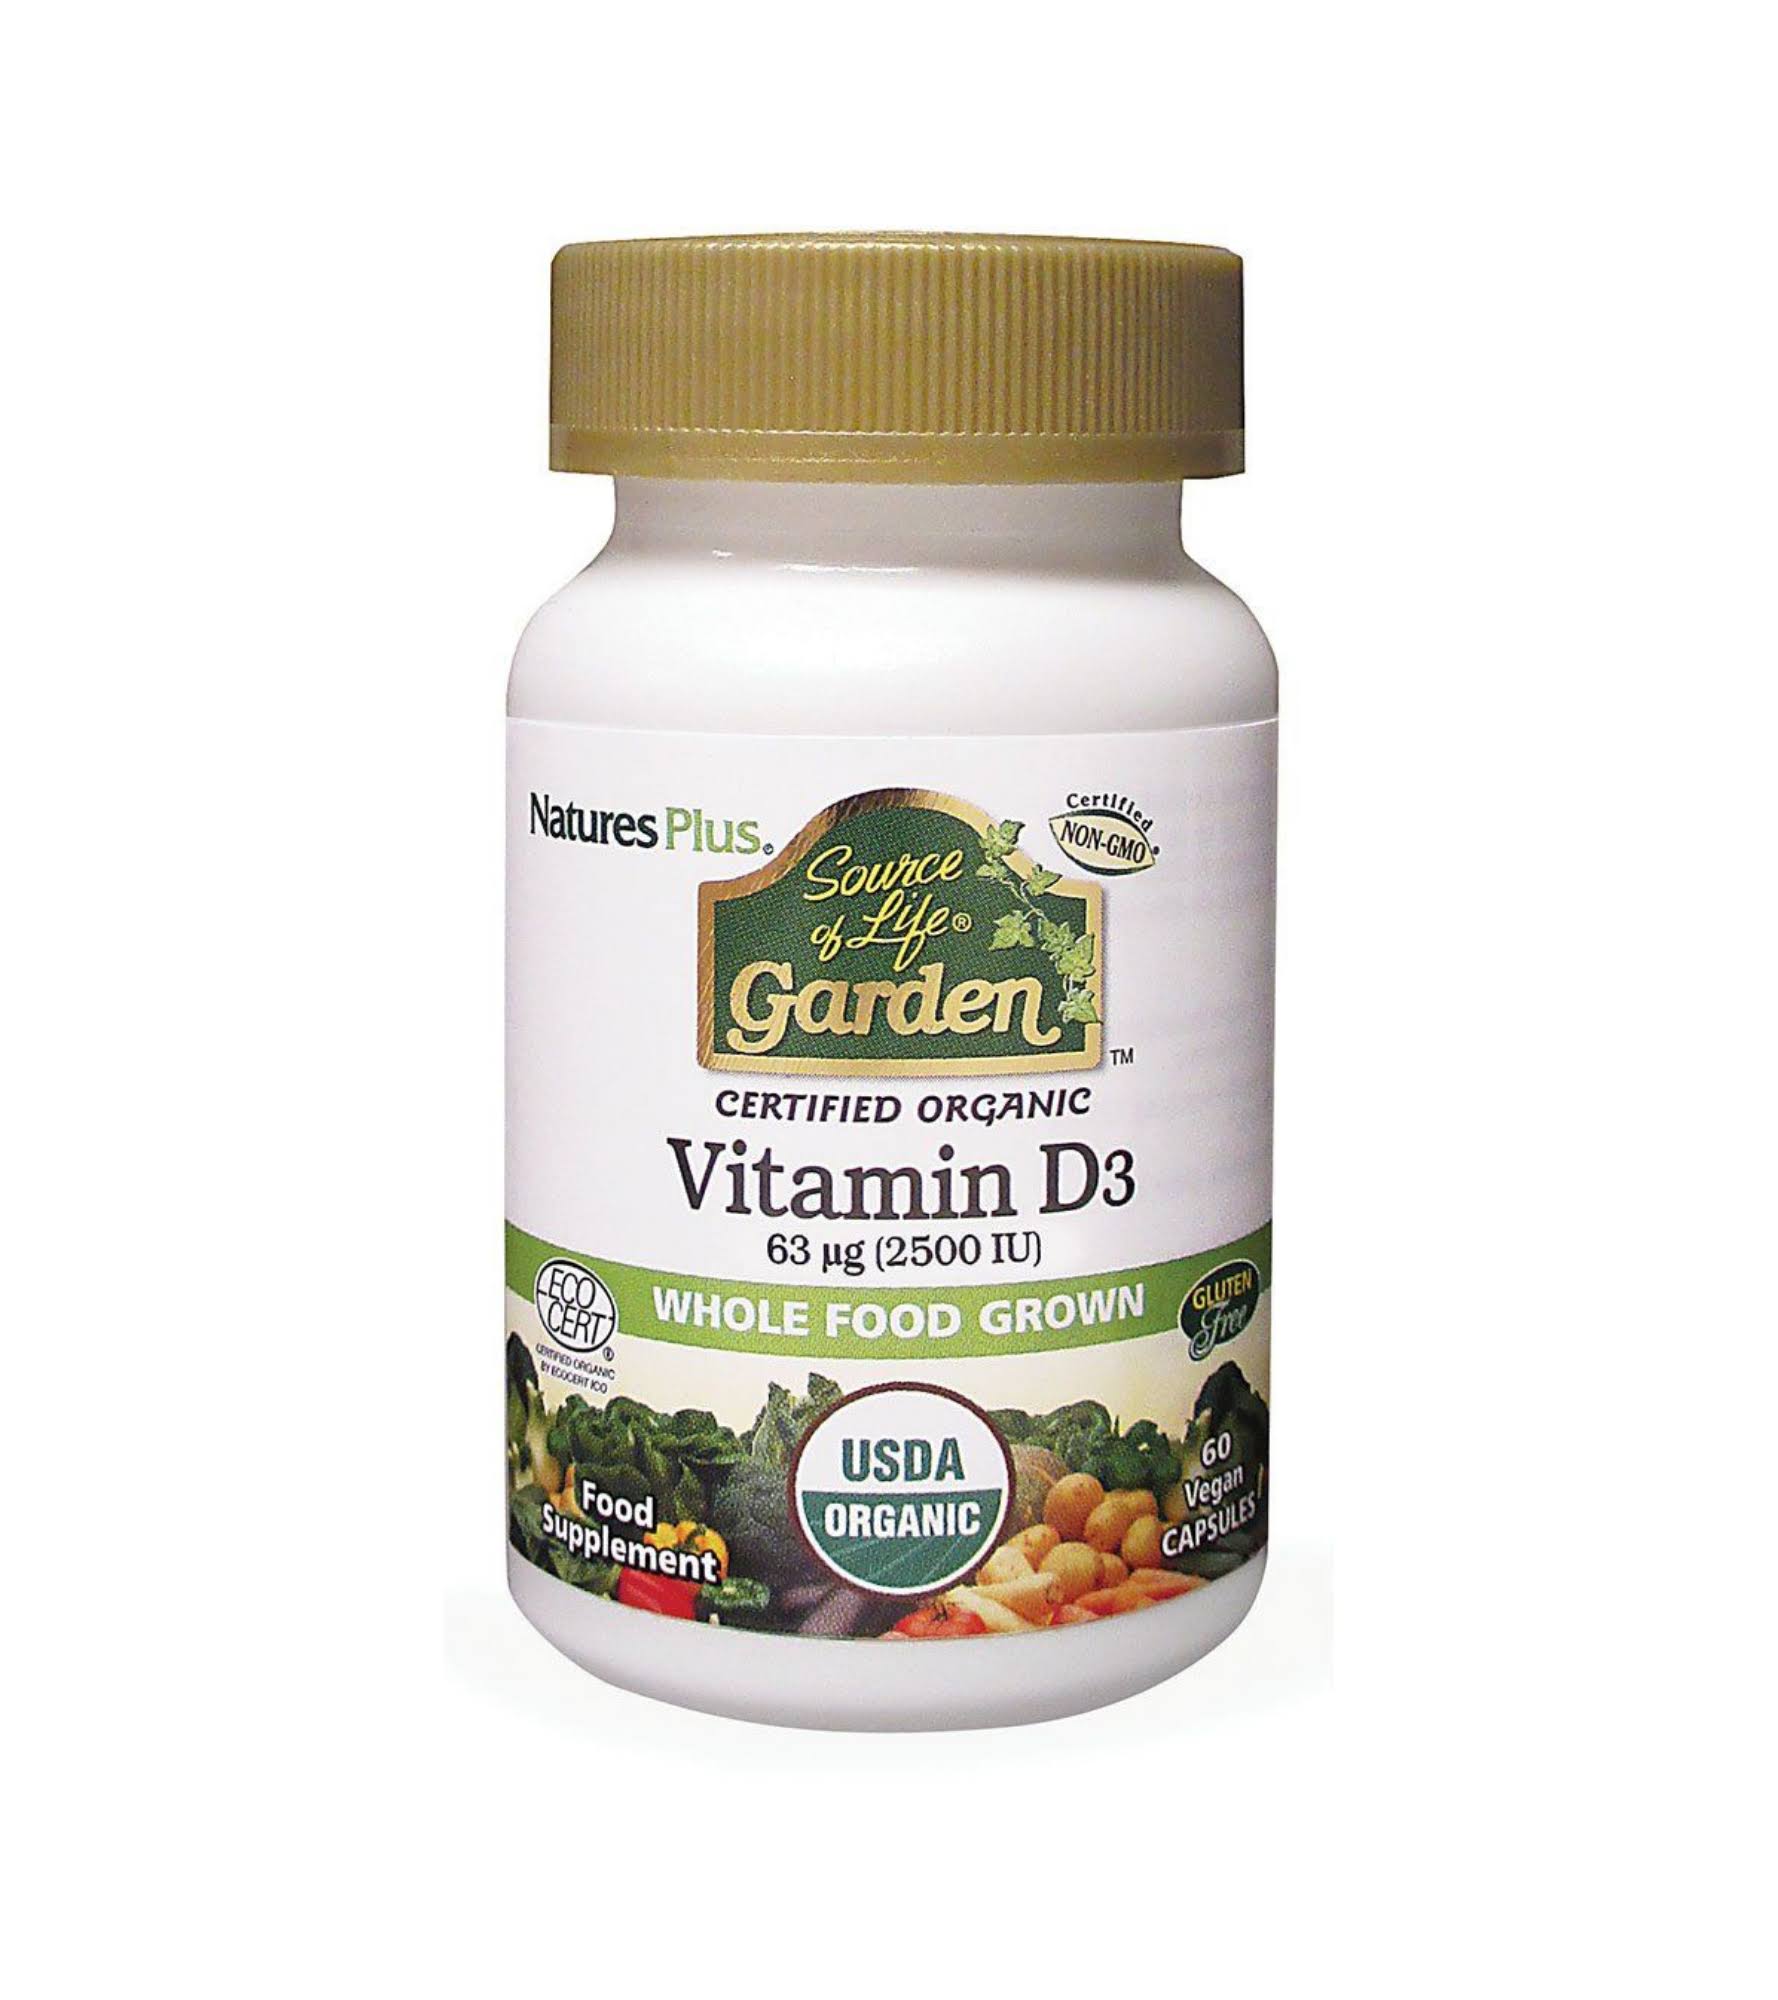 Natures Plus Source of Life Garden Vitamin D3 Capsules 60 Capsules